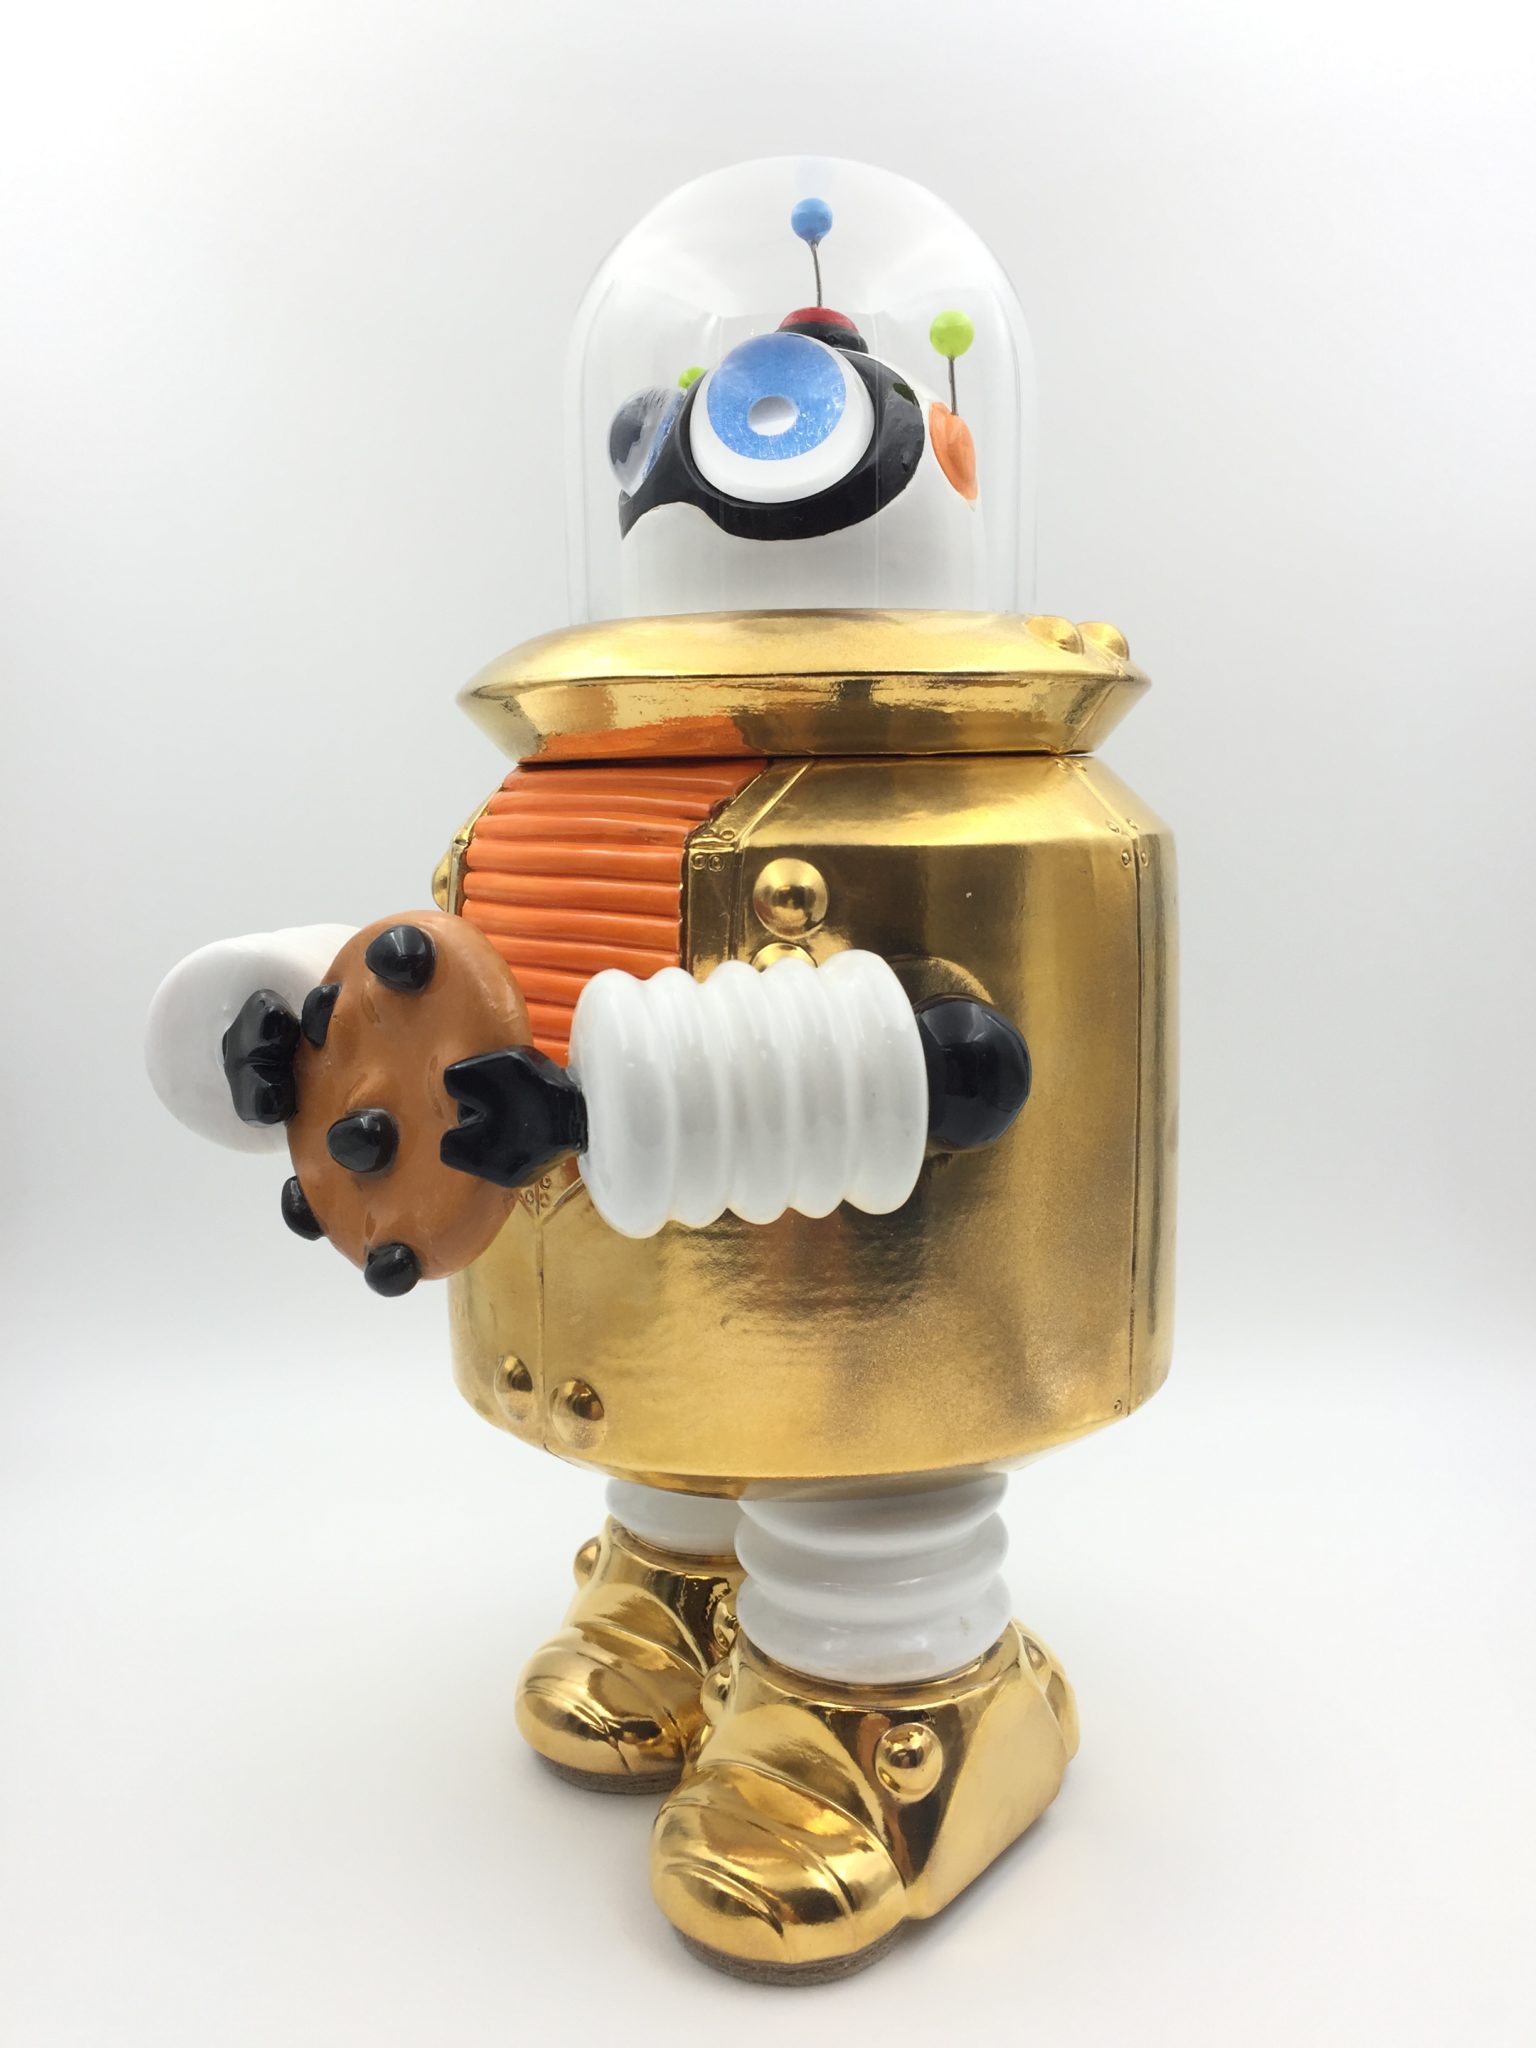 Robot Cookie Jar - Doug Anderson